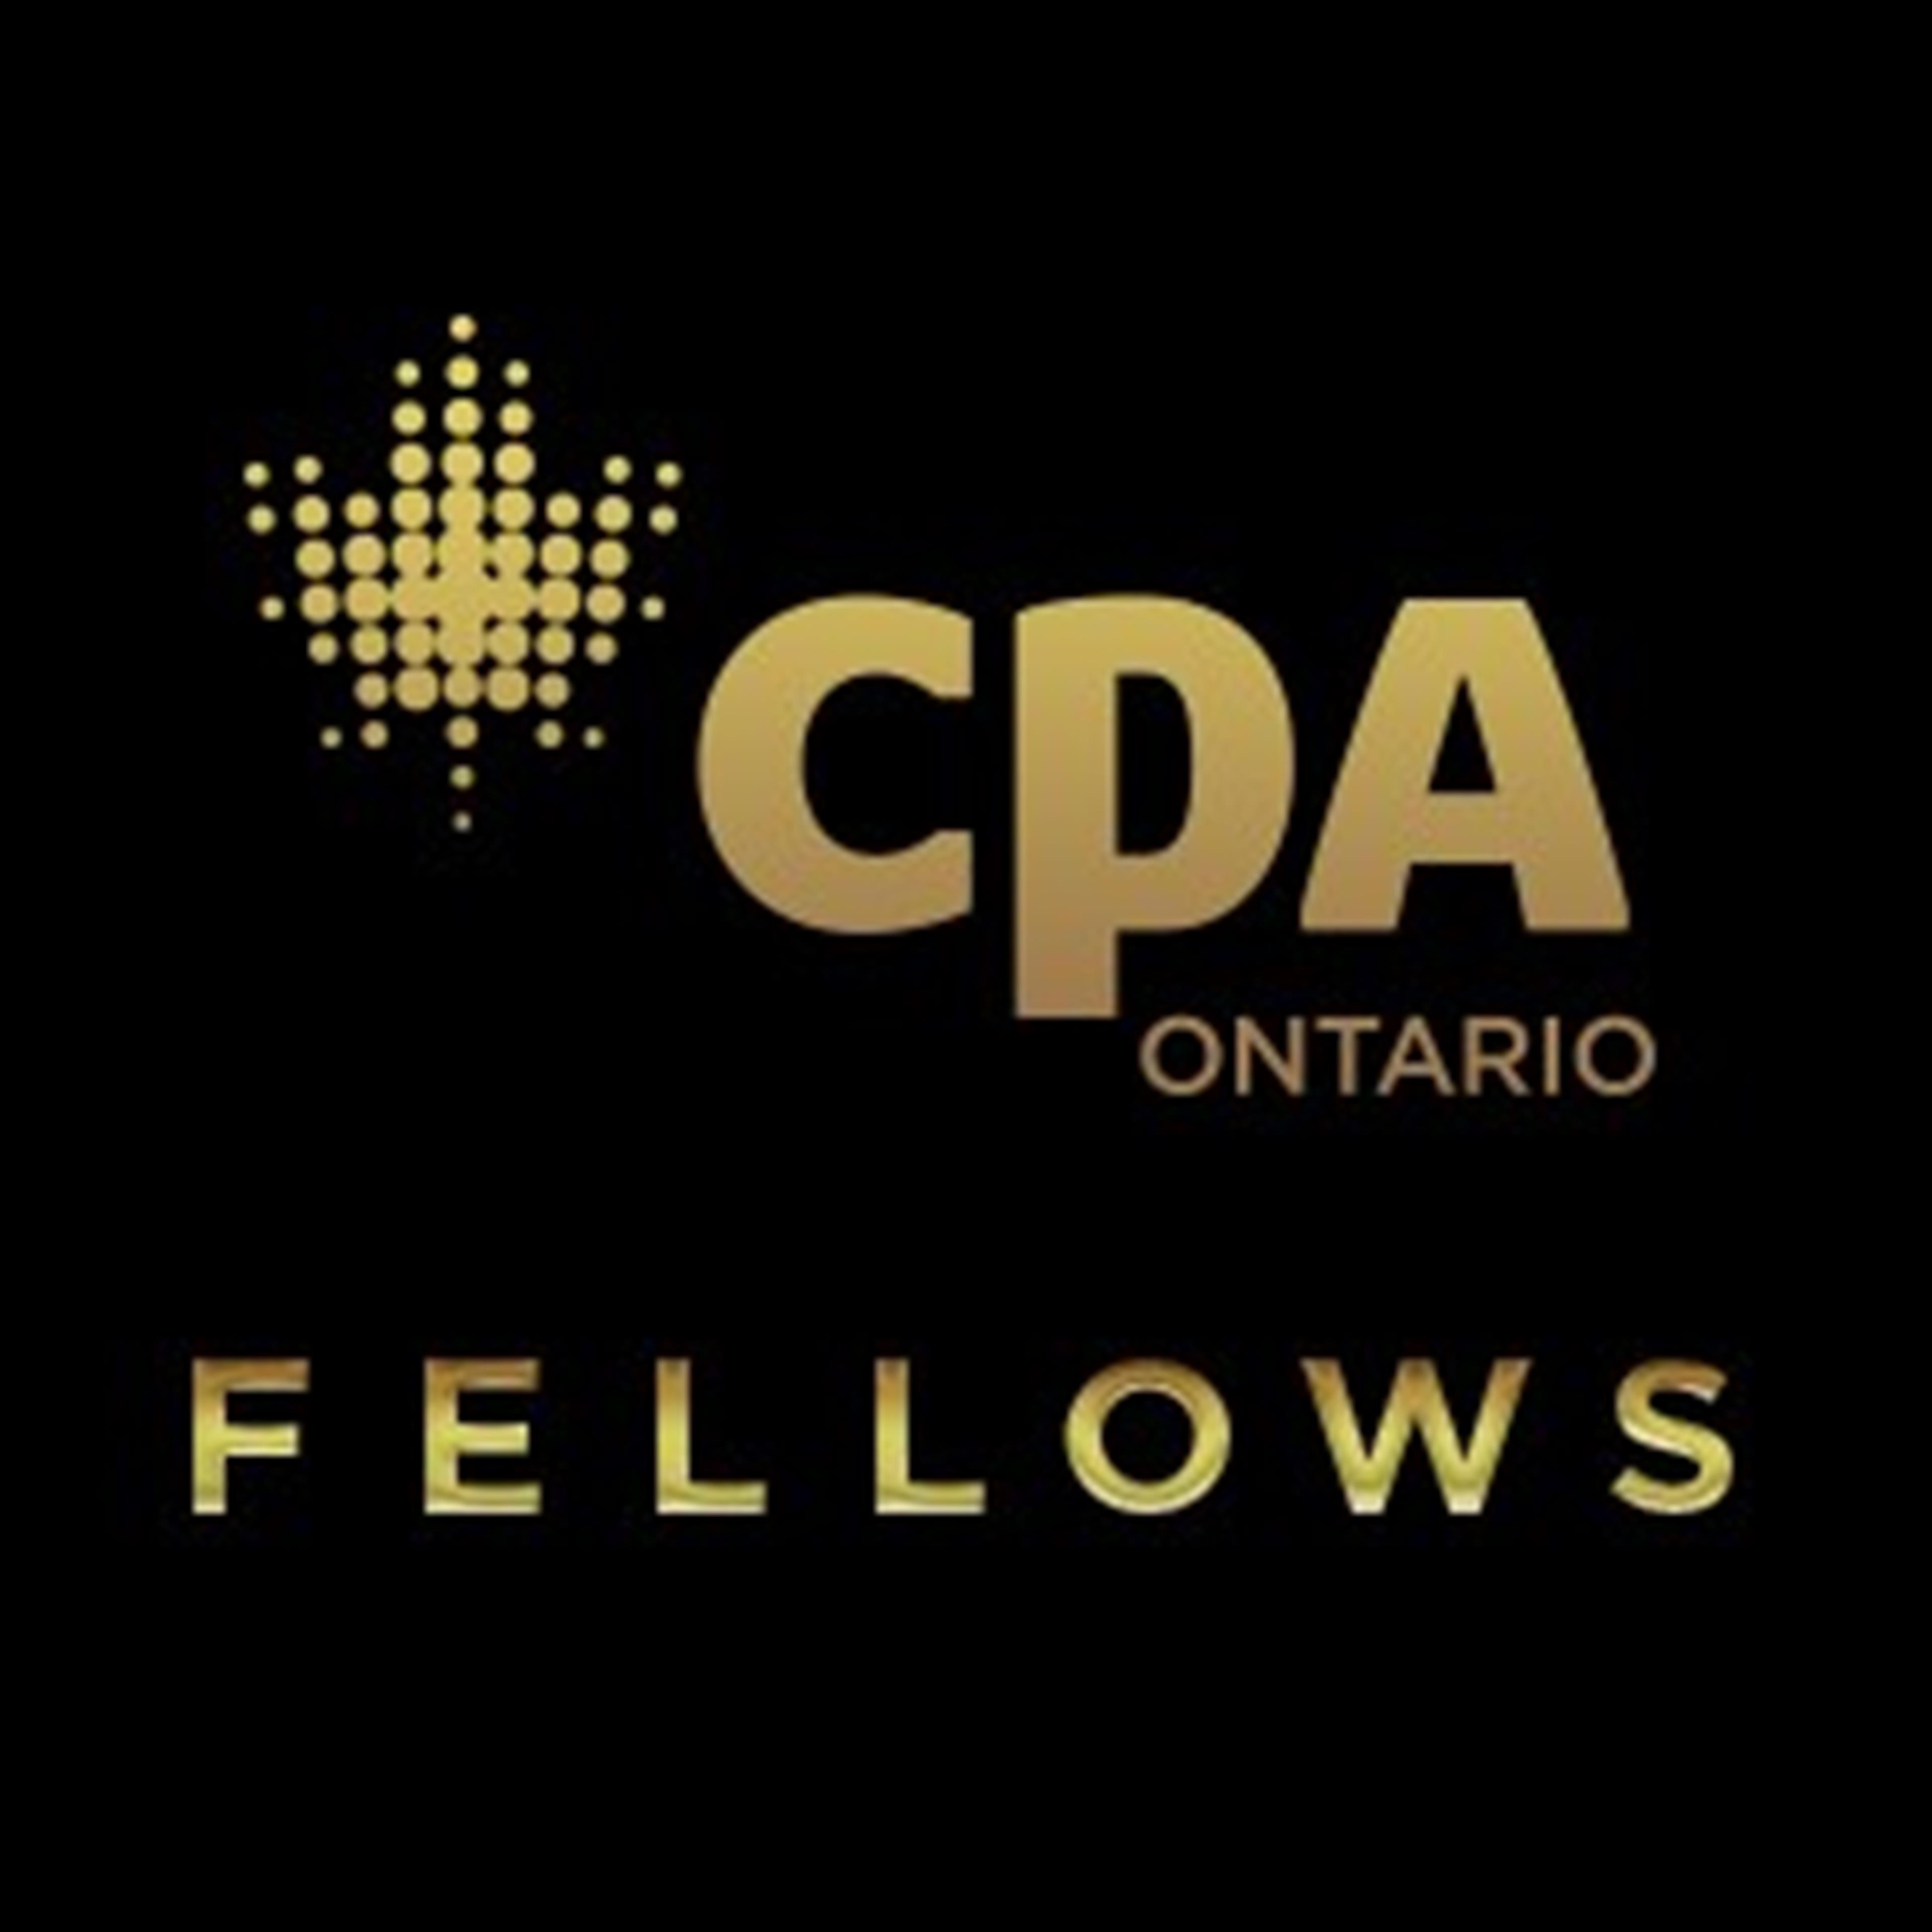 CPA Ontario Fellows